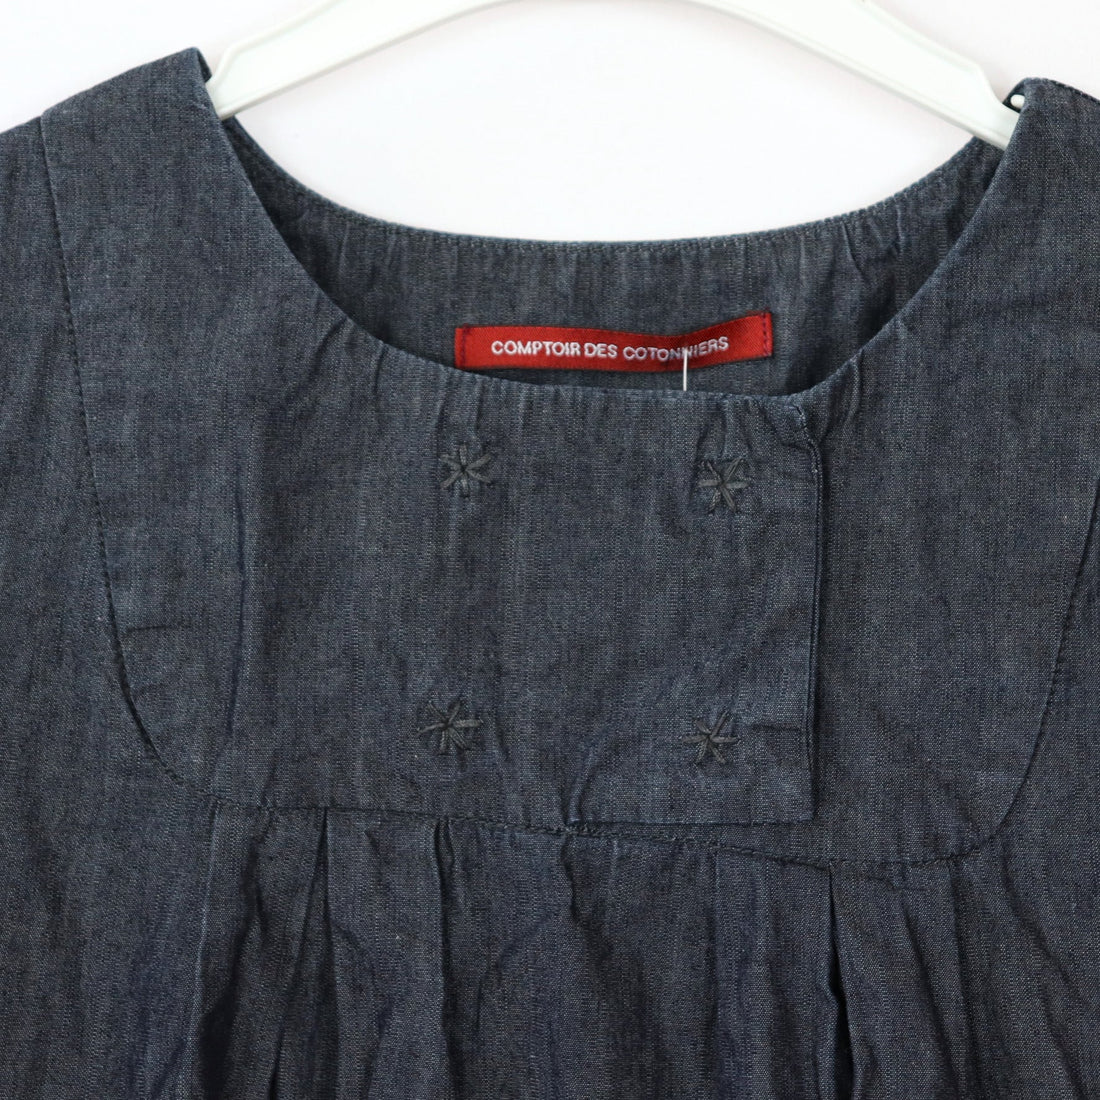 Kleid - Comptoir - 140 - schwarz - Jeans - sehr guter Zustand